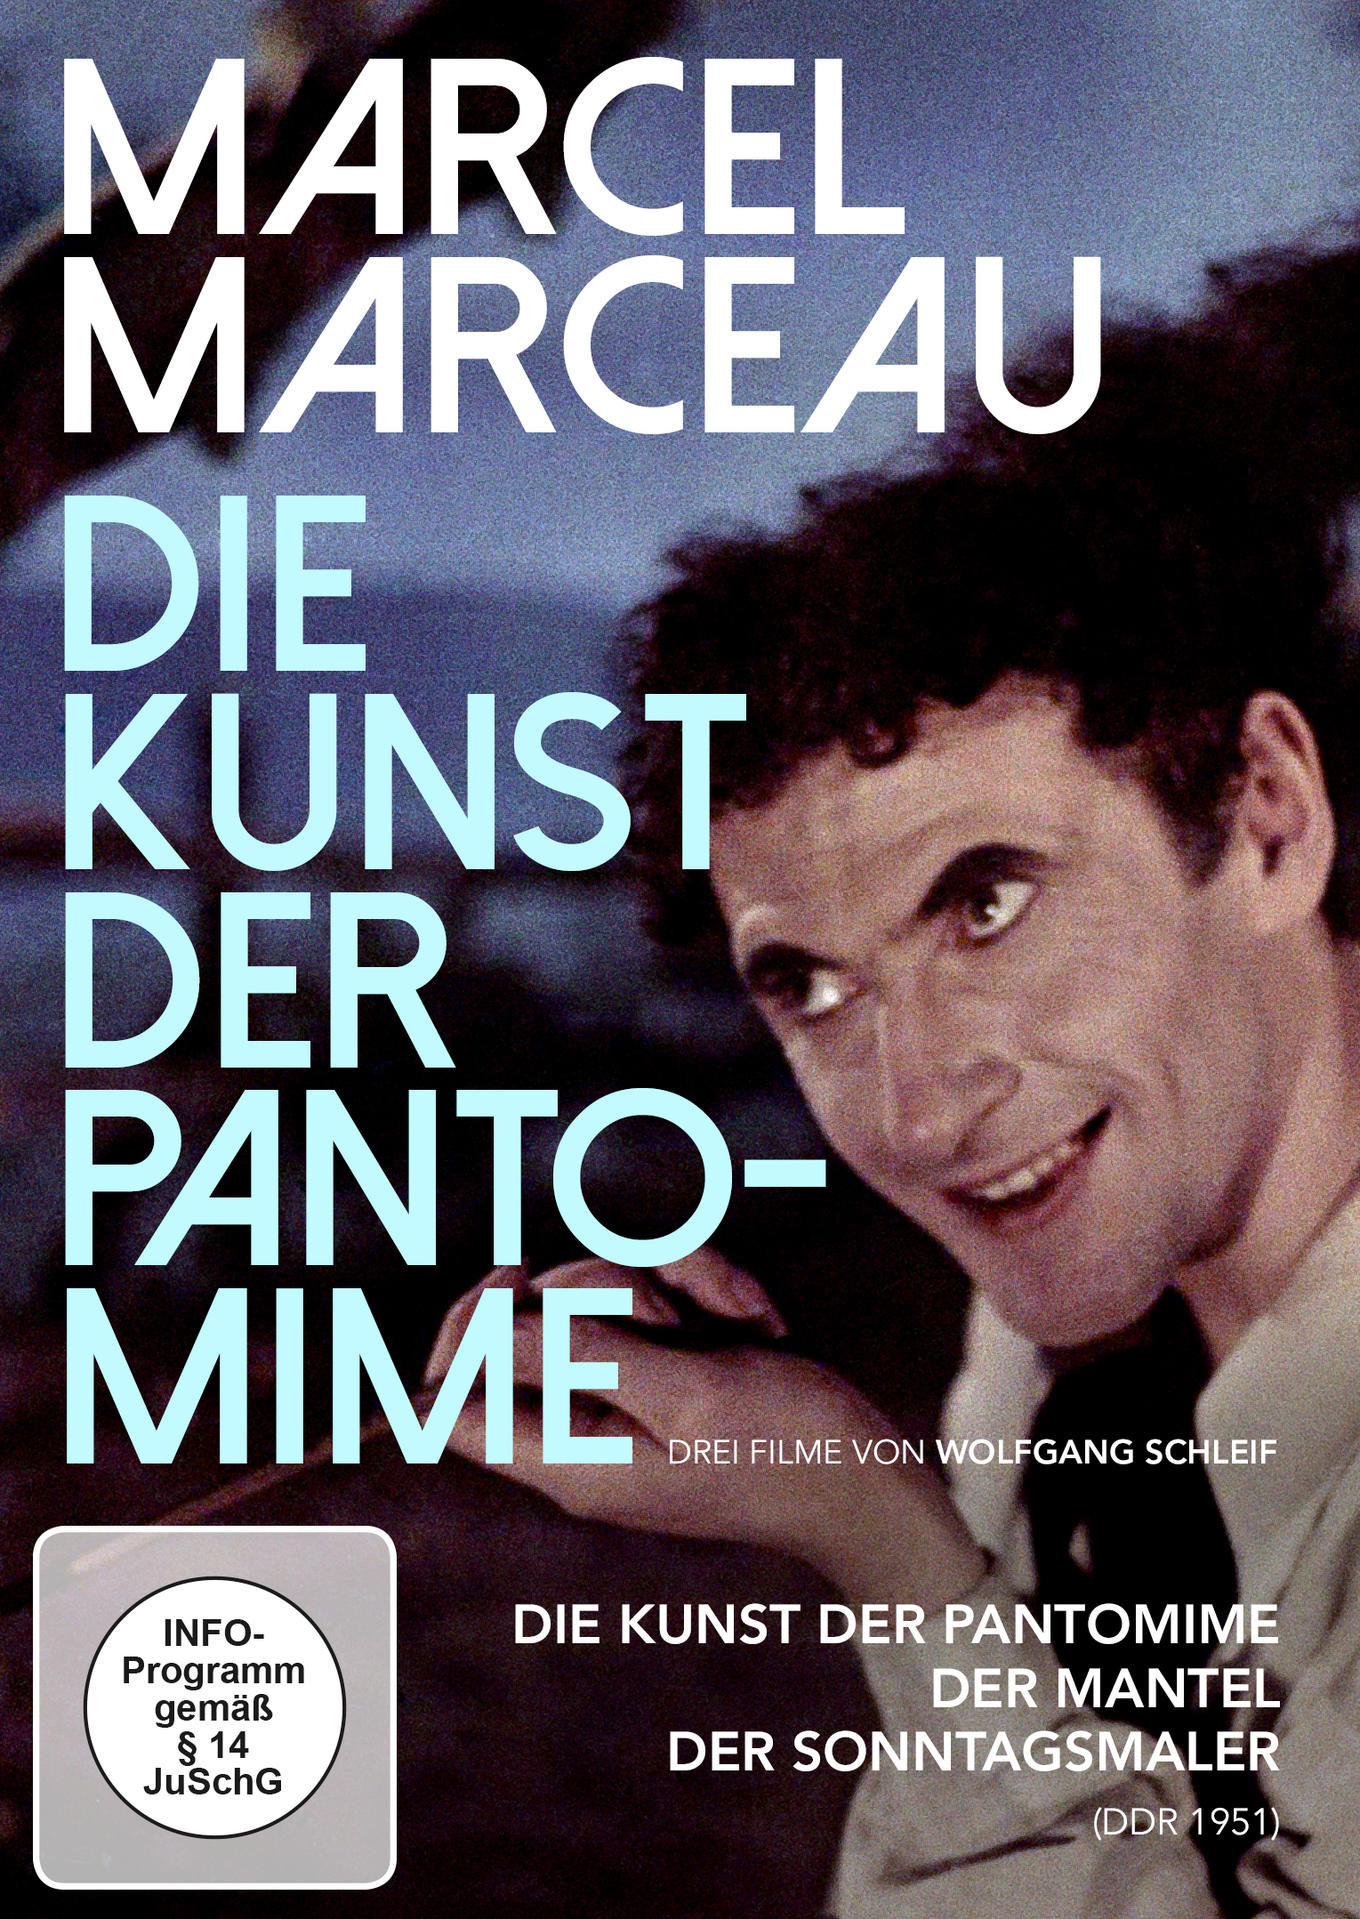 Marcel Marceau Die DVD Pantomime der - Kunst